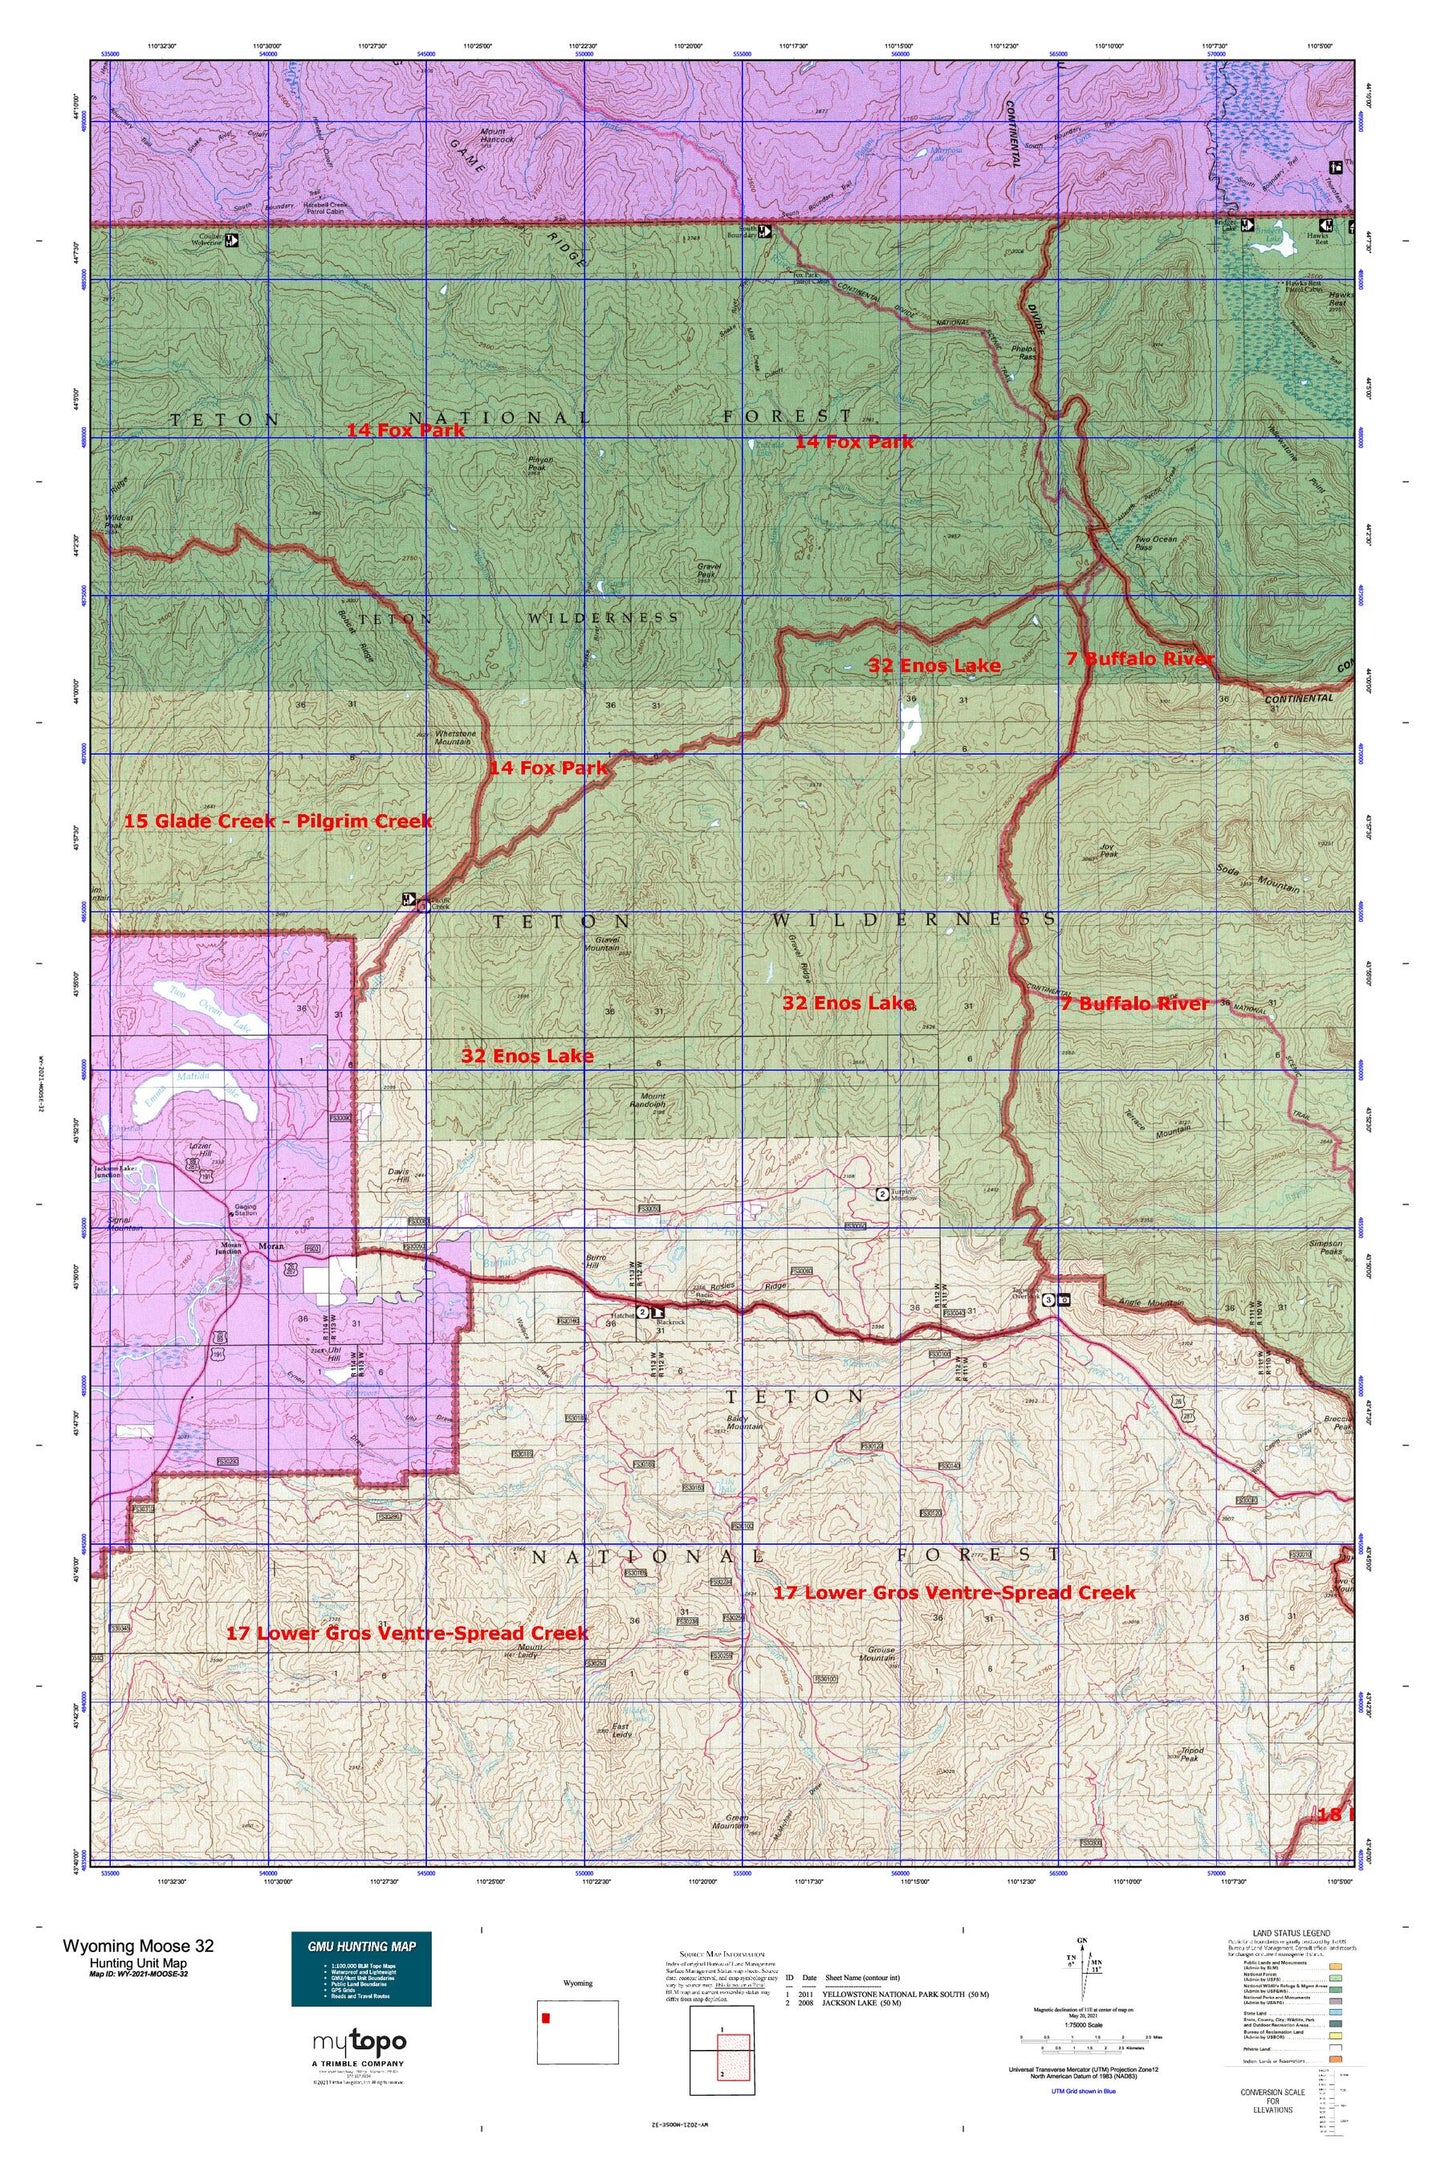 Wyoming Moose 32 Map Image